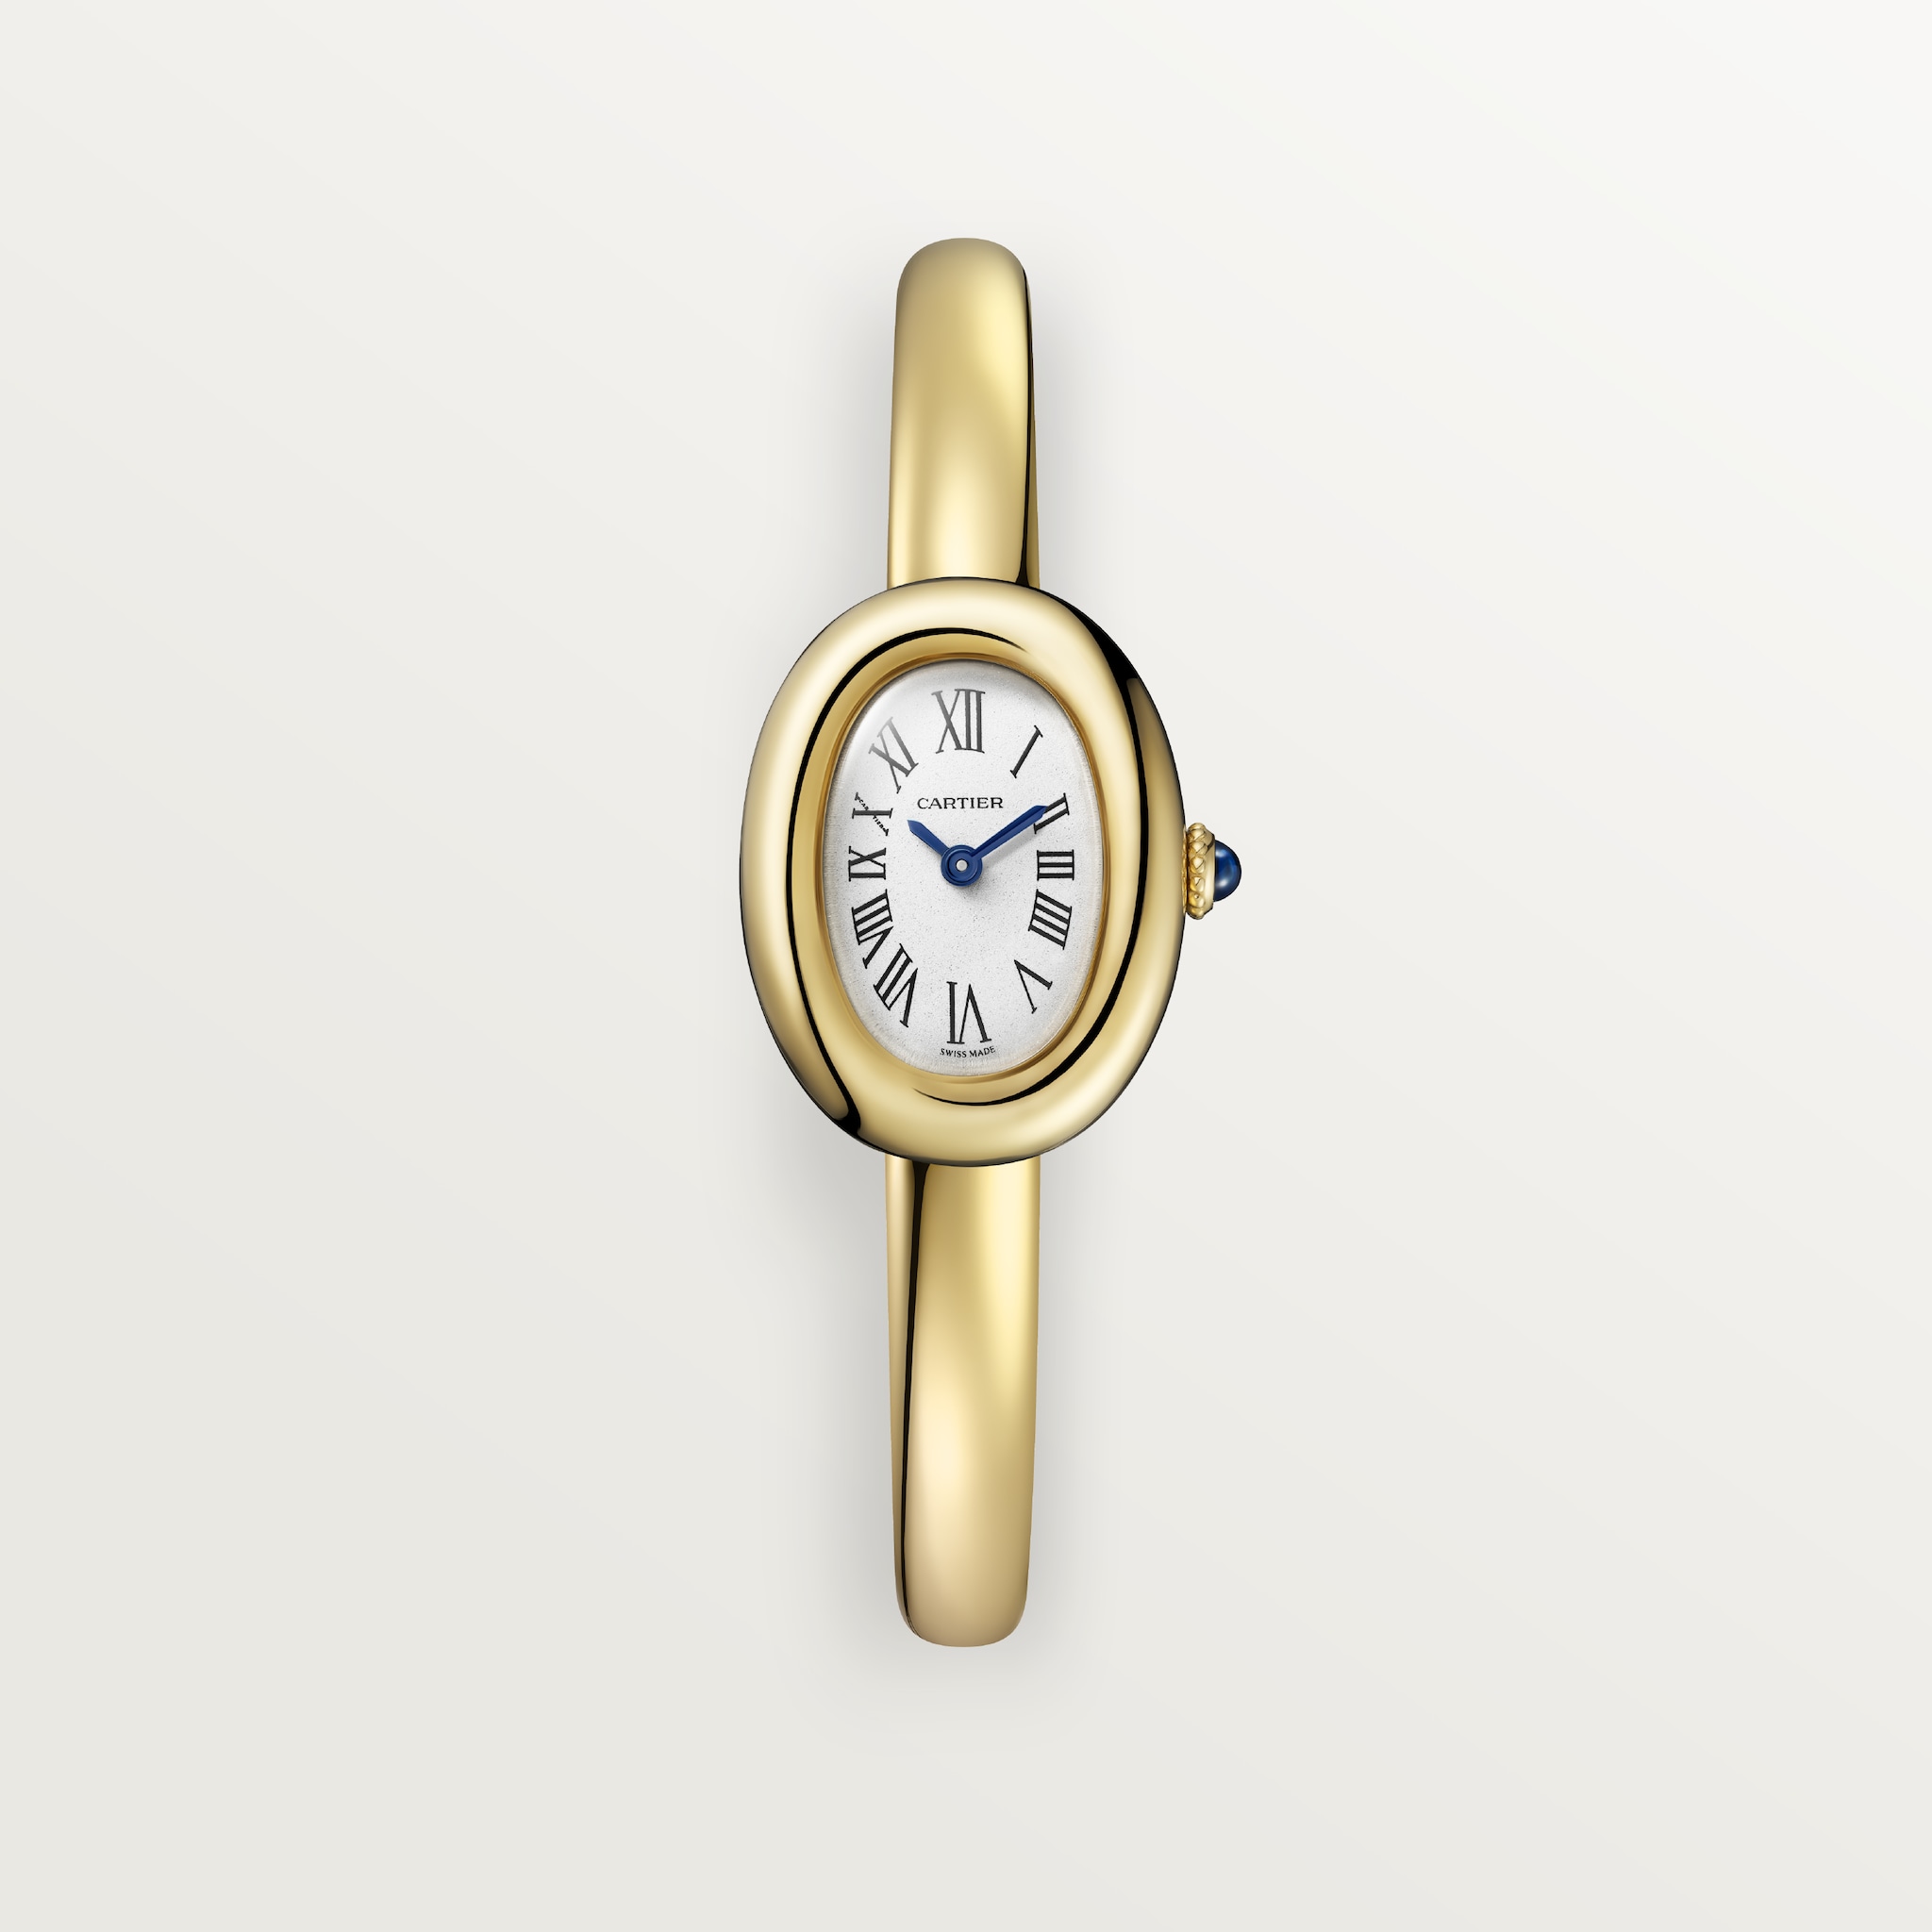 Baignoire watch (Size 16)Mini model, quartz movement, yellow gold